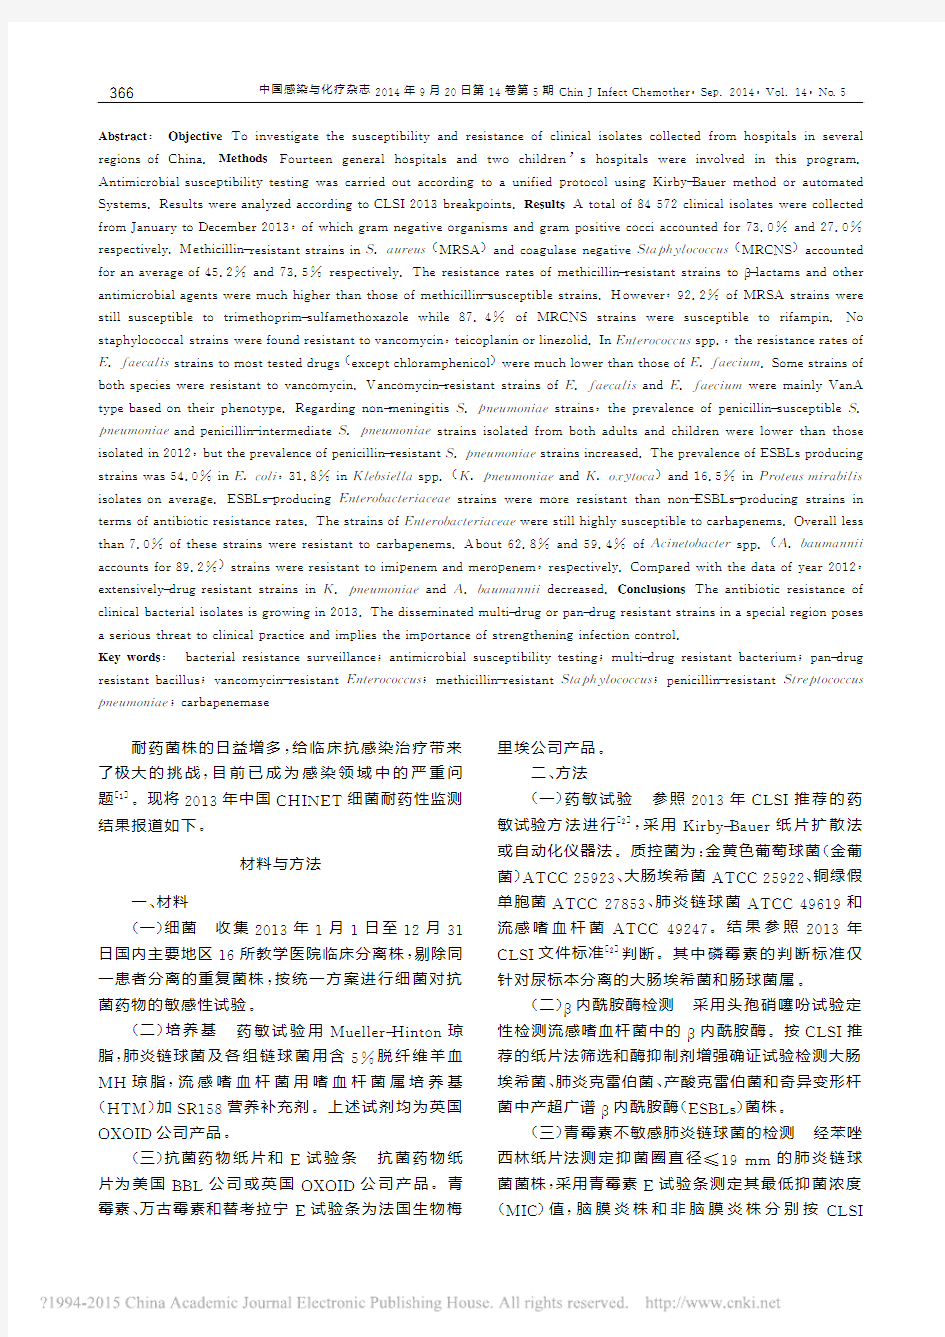 2013年中国CHINET细菌耐药性监测_胡付品